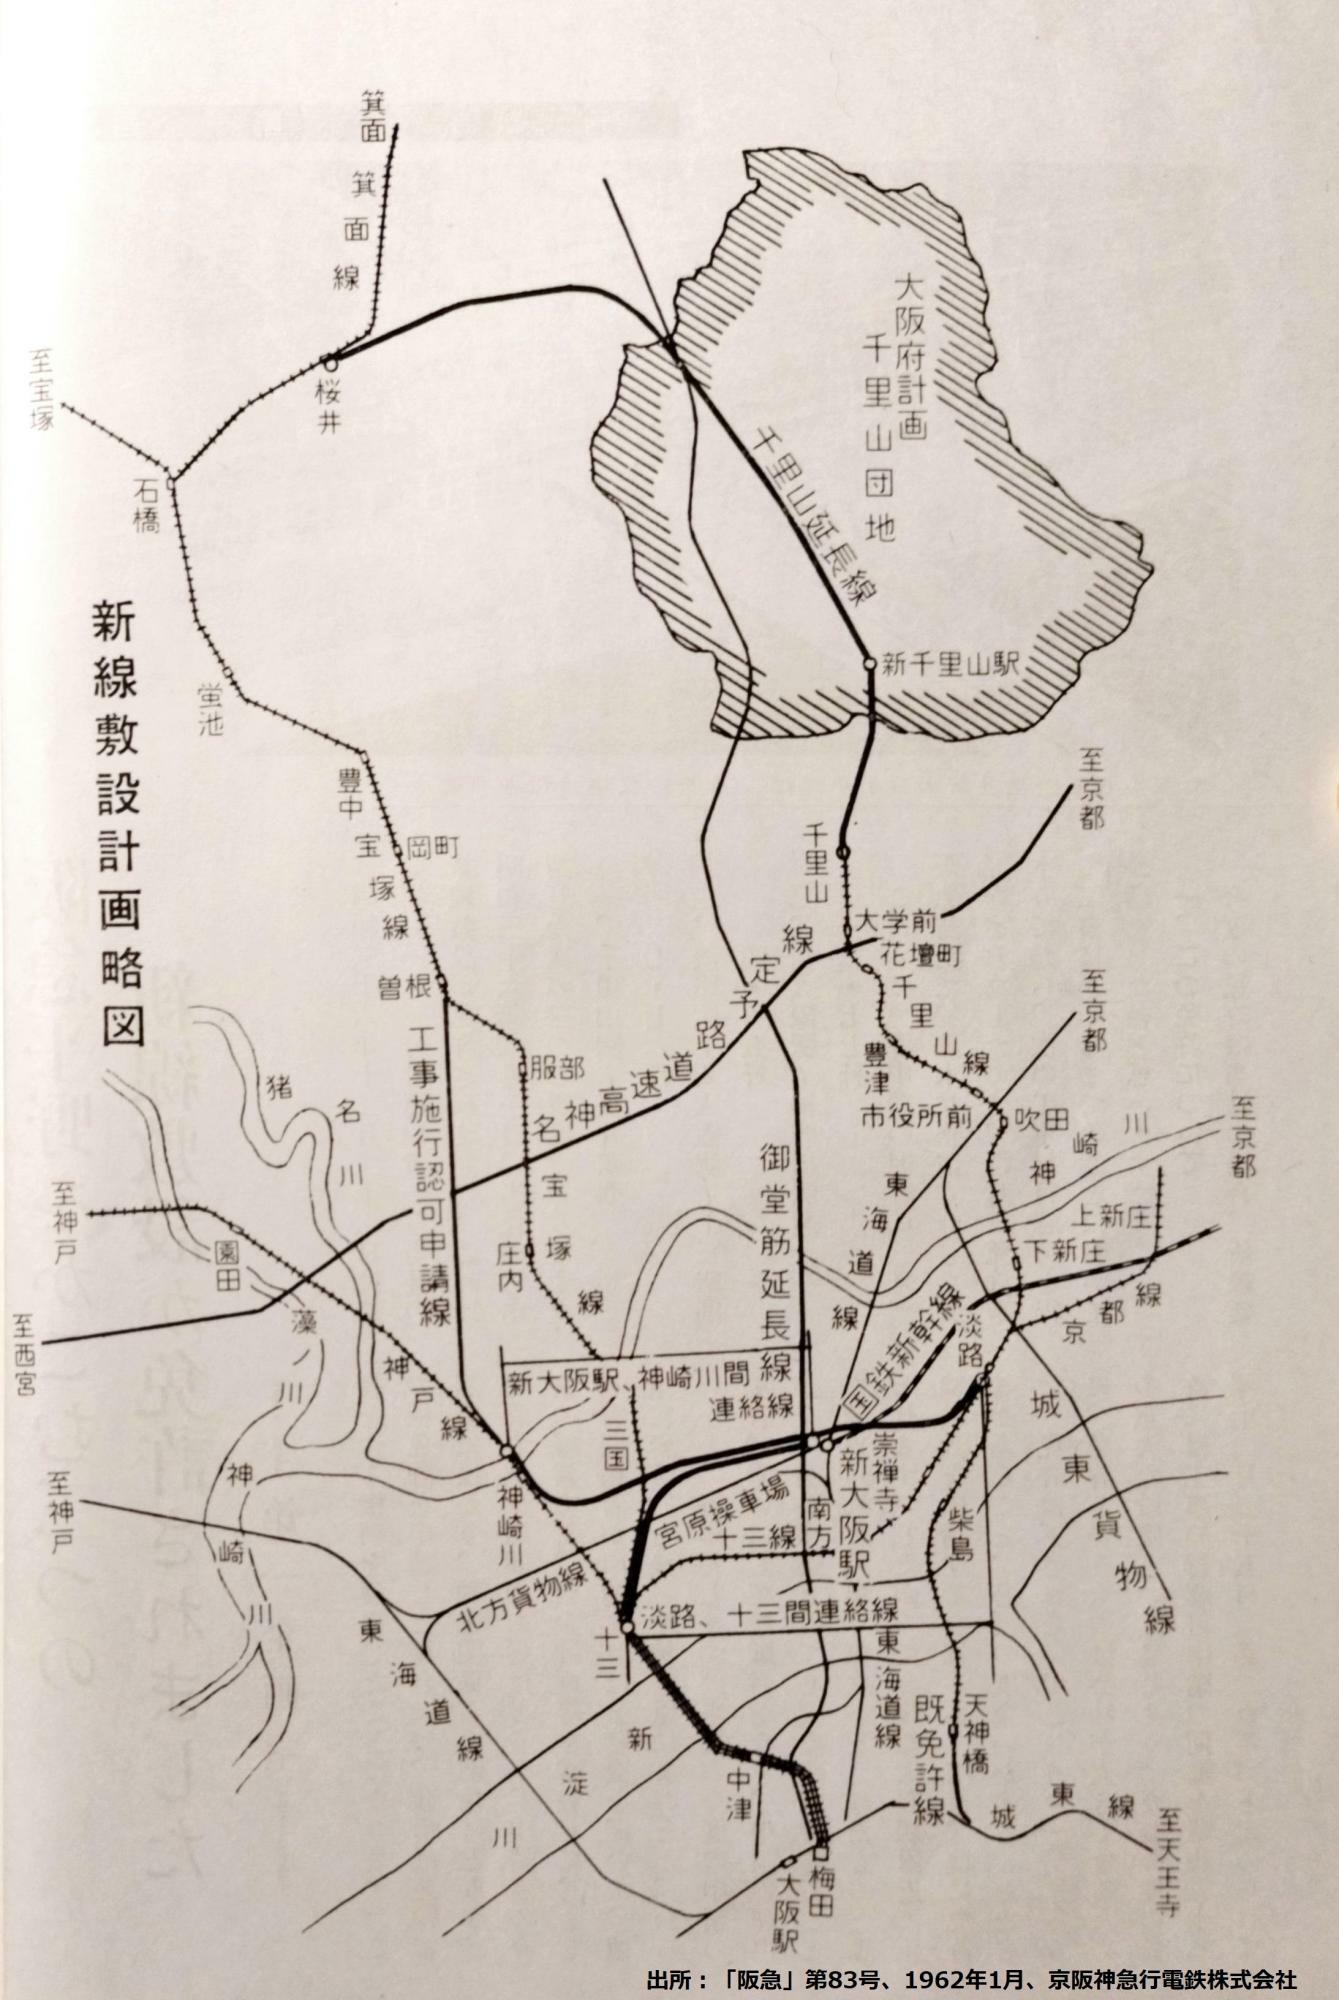 1962年当時の新線敷設計画略図（出所：「阪急」第83号、1962年1月、京阪神急行電鉄株式会社、p14)